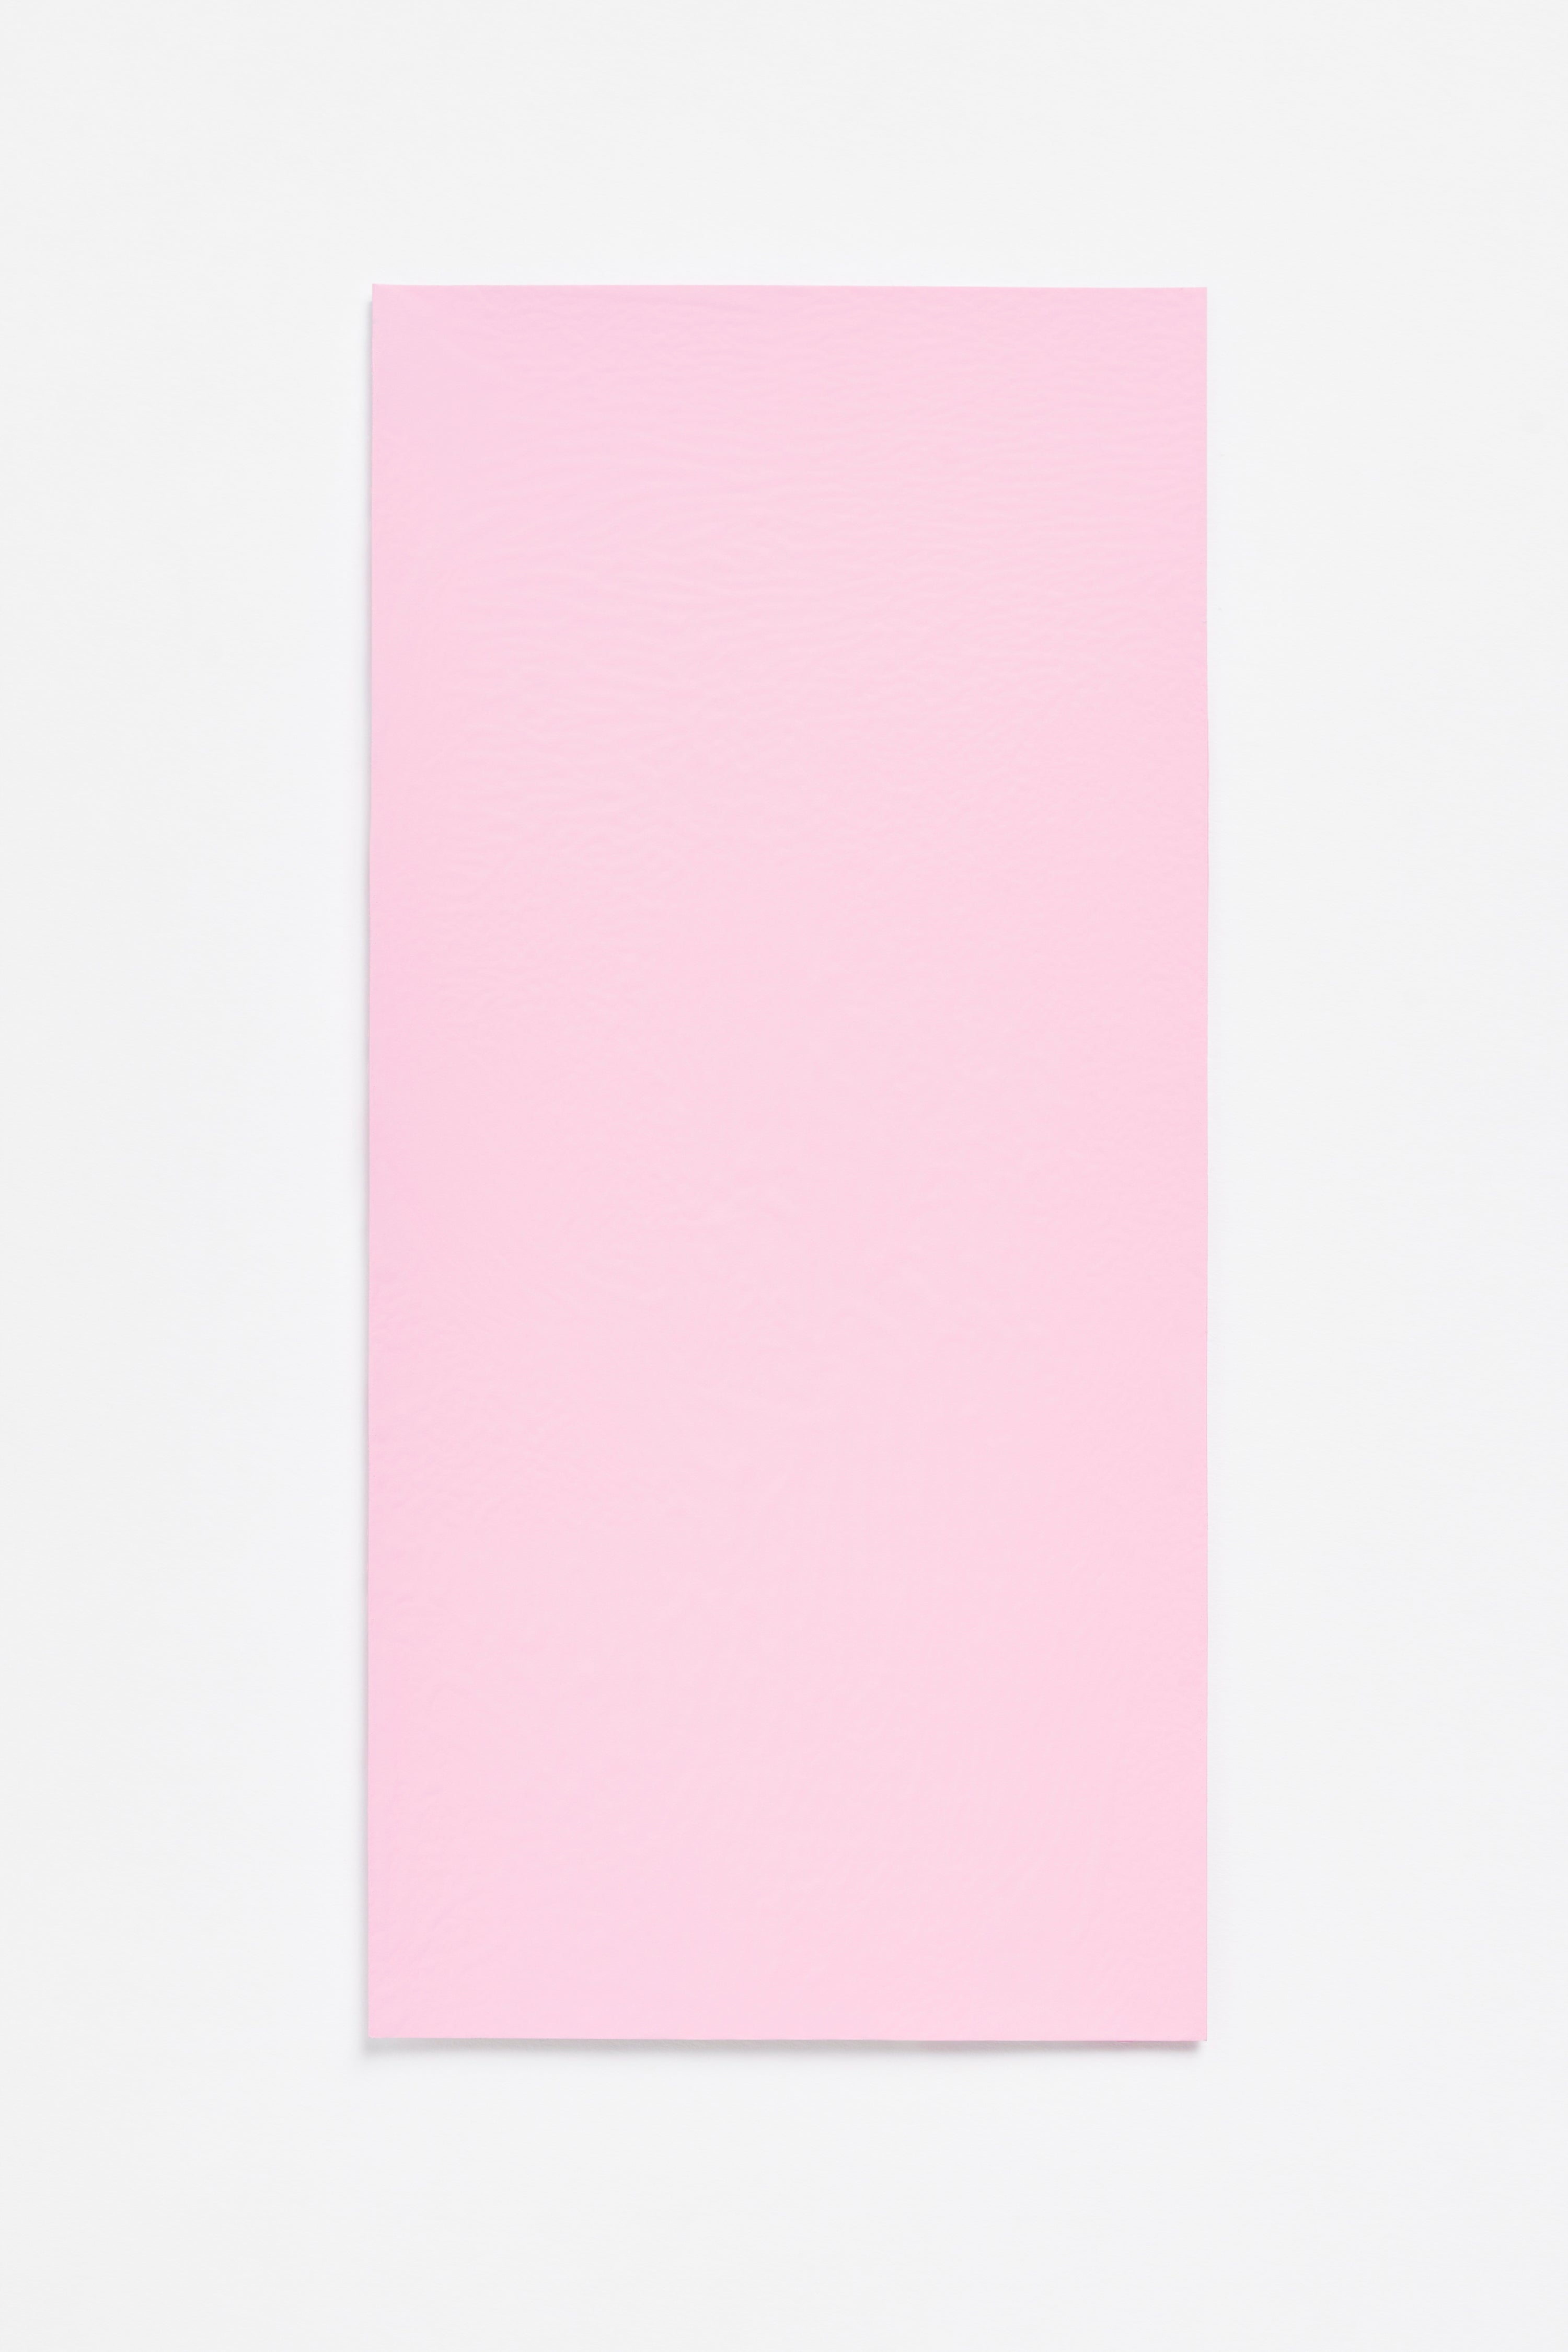 Bubblegum — a paint colour developed by Sabine Marcelis for Blēo